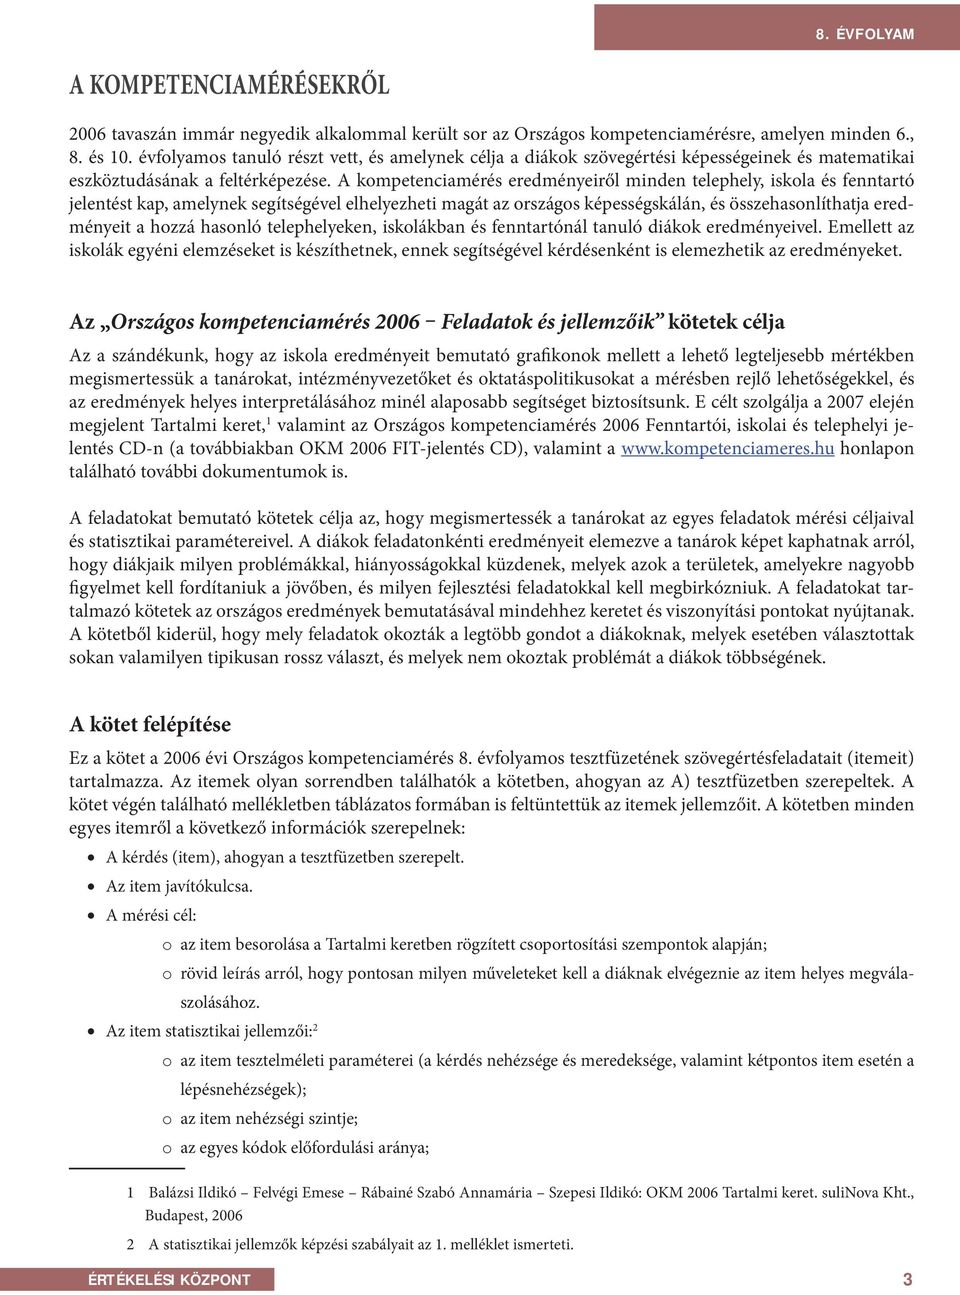 Országos kompetenciamérés 2006 Feladatok és jellemzőik. szövegértés 8.  évfolyam - PDF Ingyenes letöltés